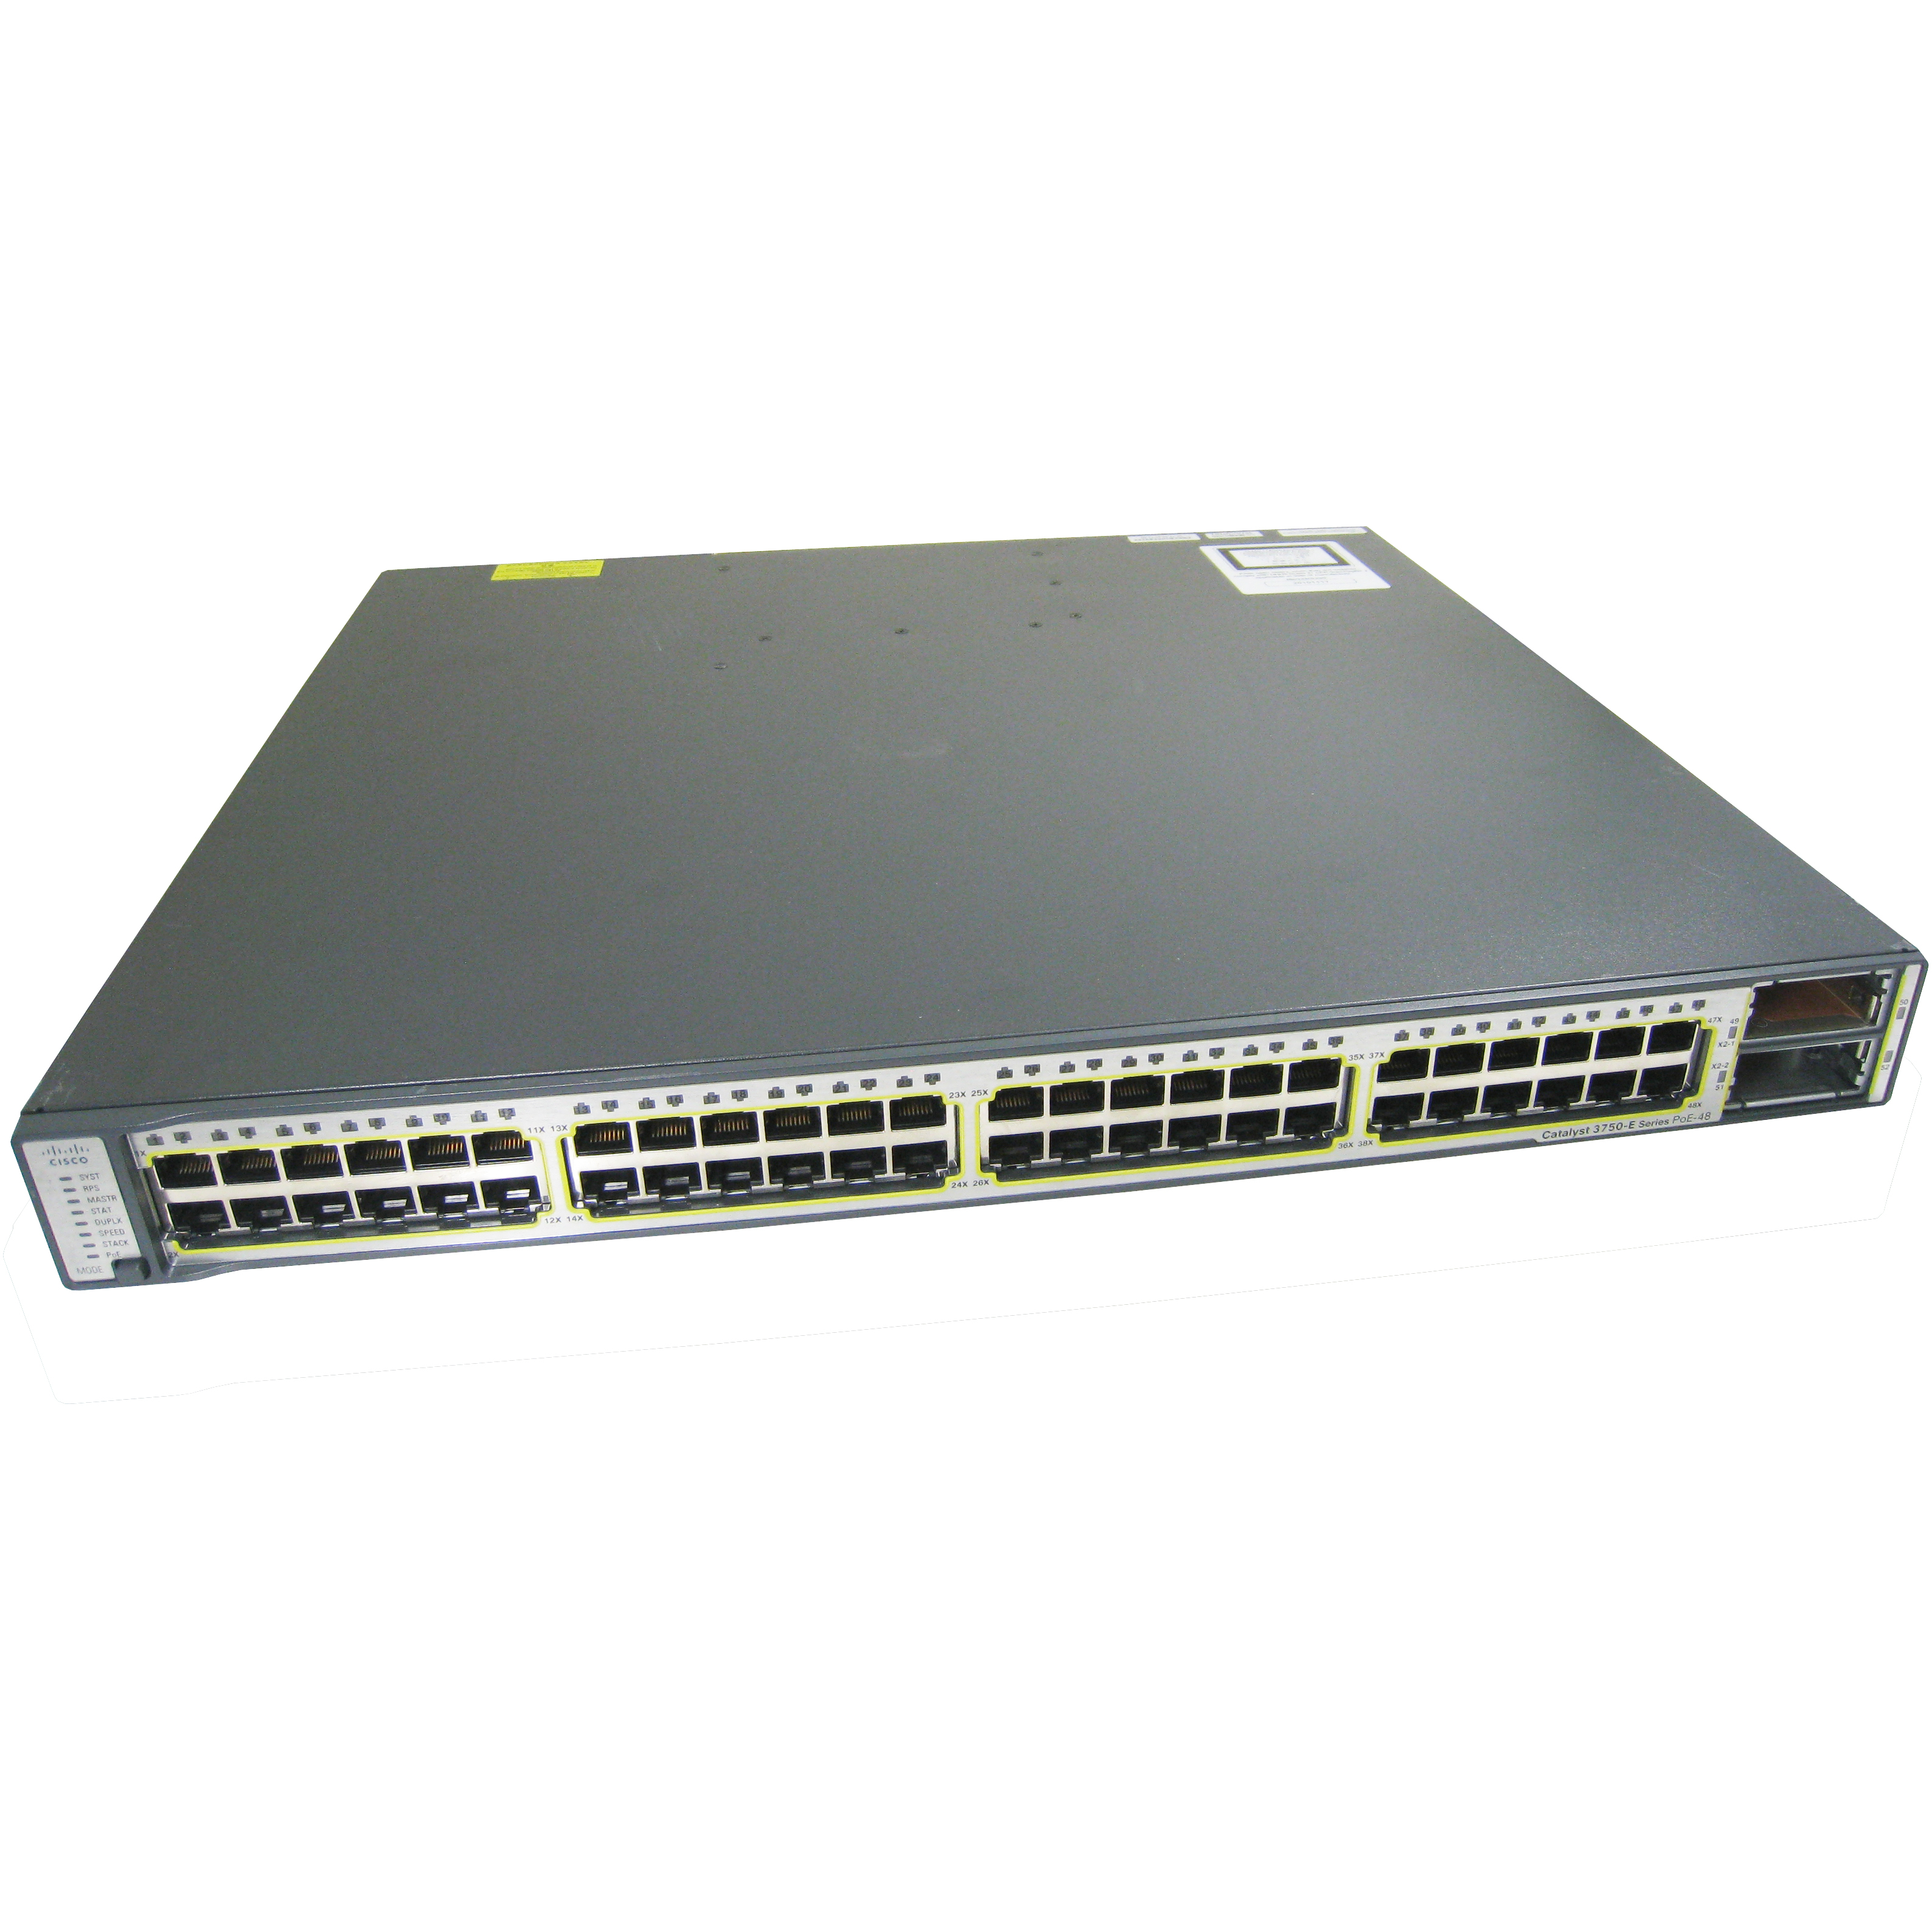 Cisco WS-C3750E-48TD-E